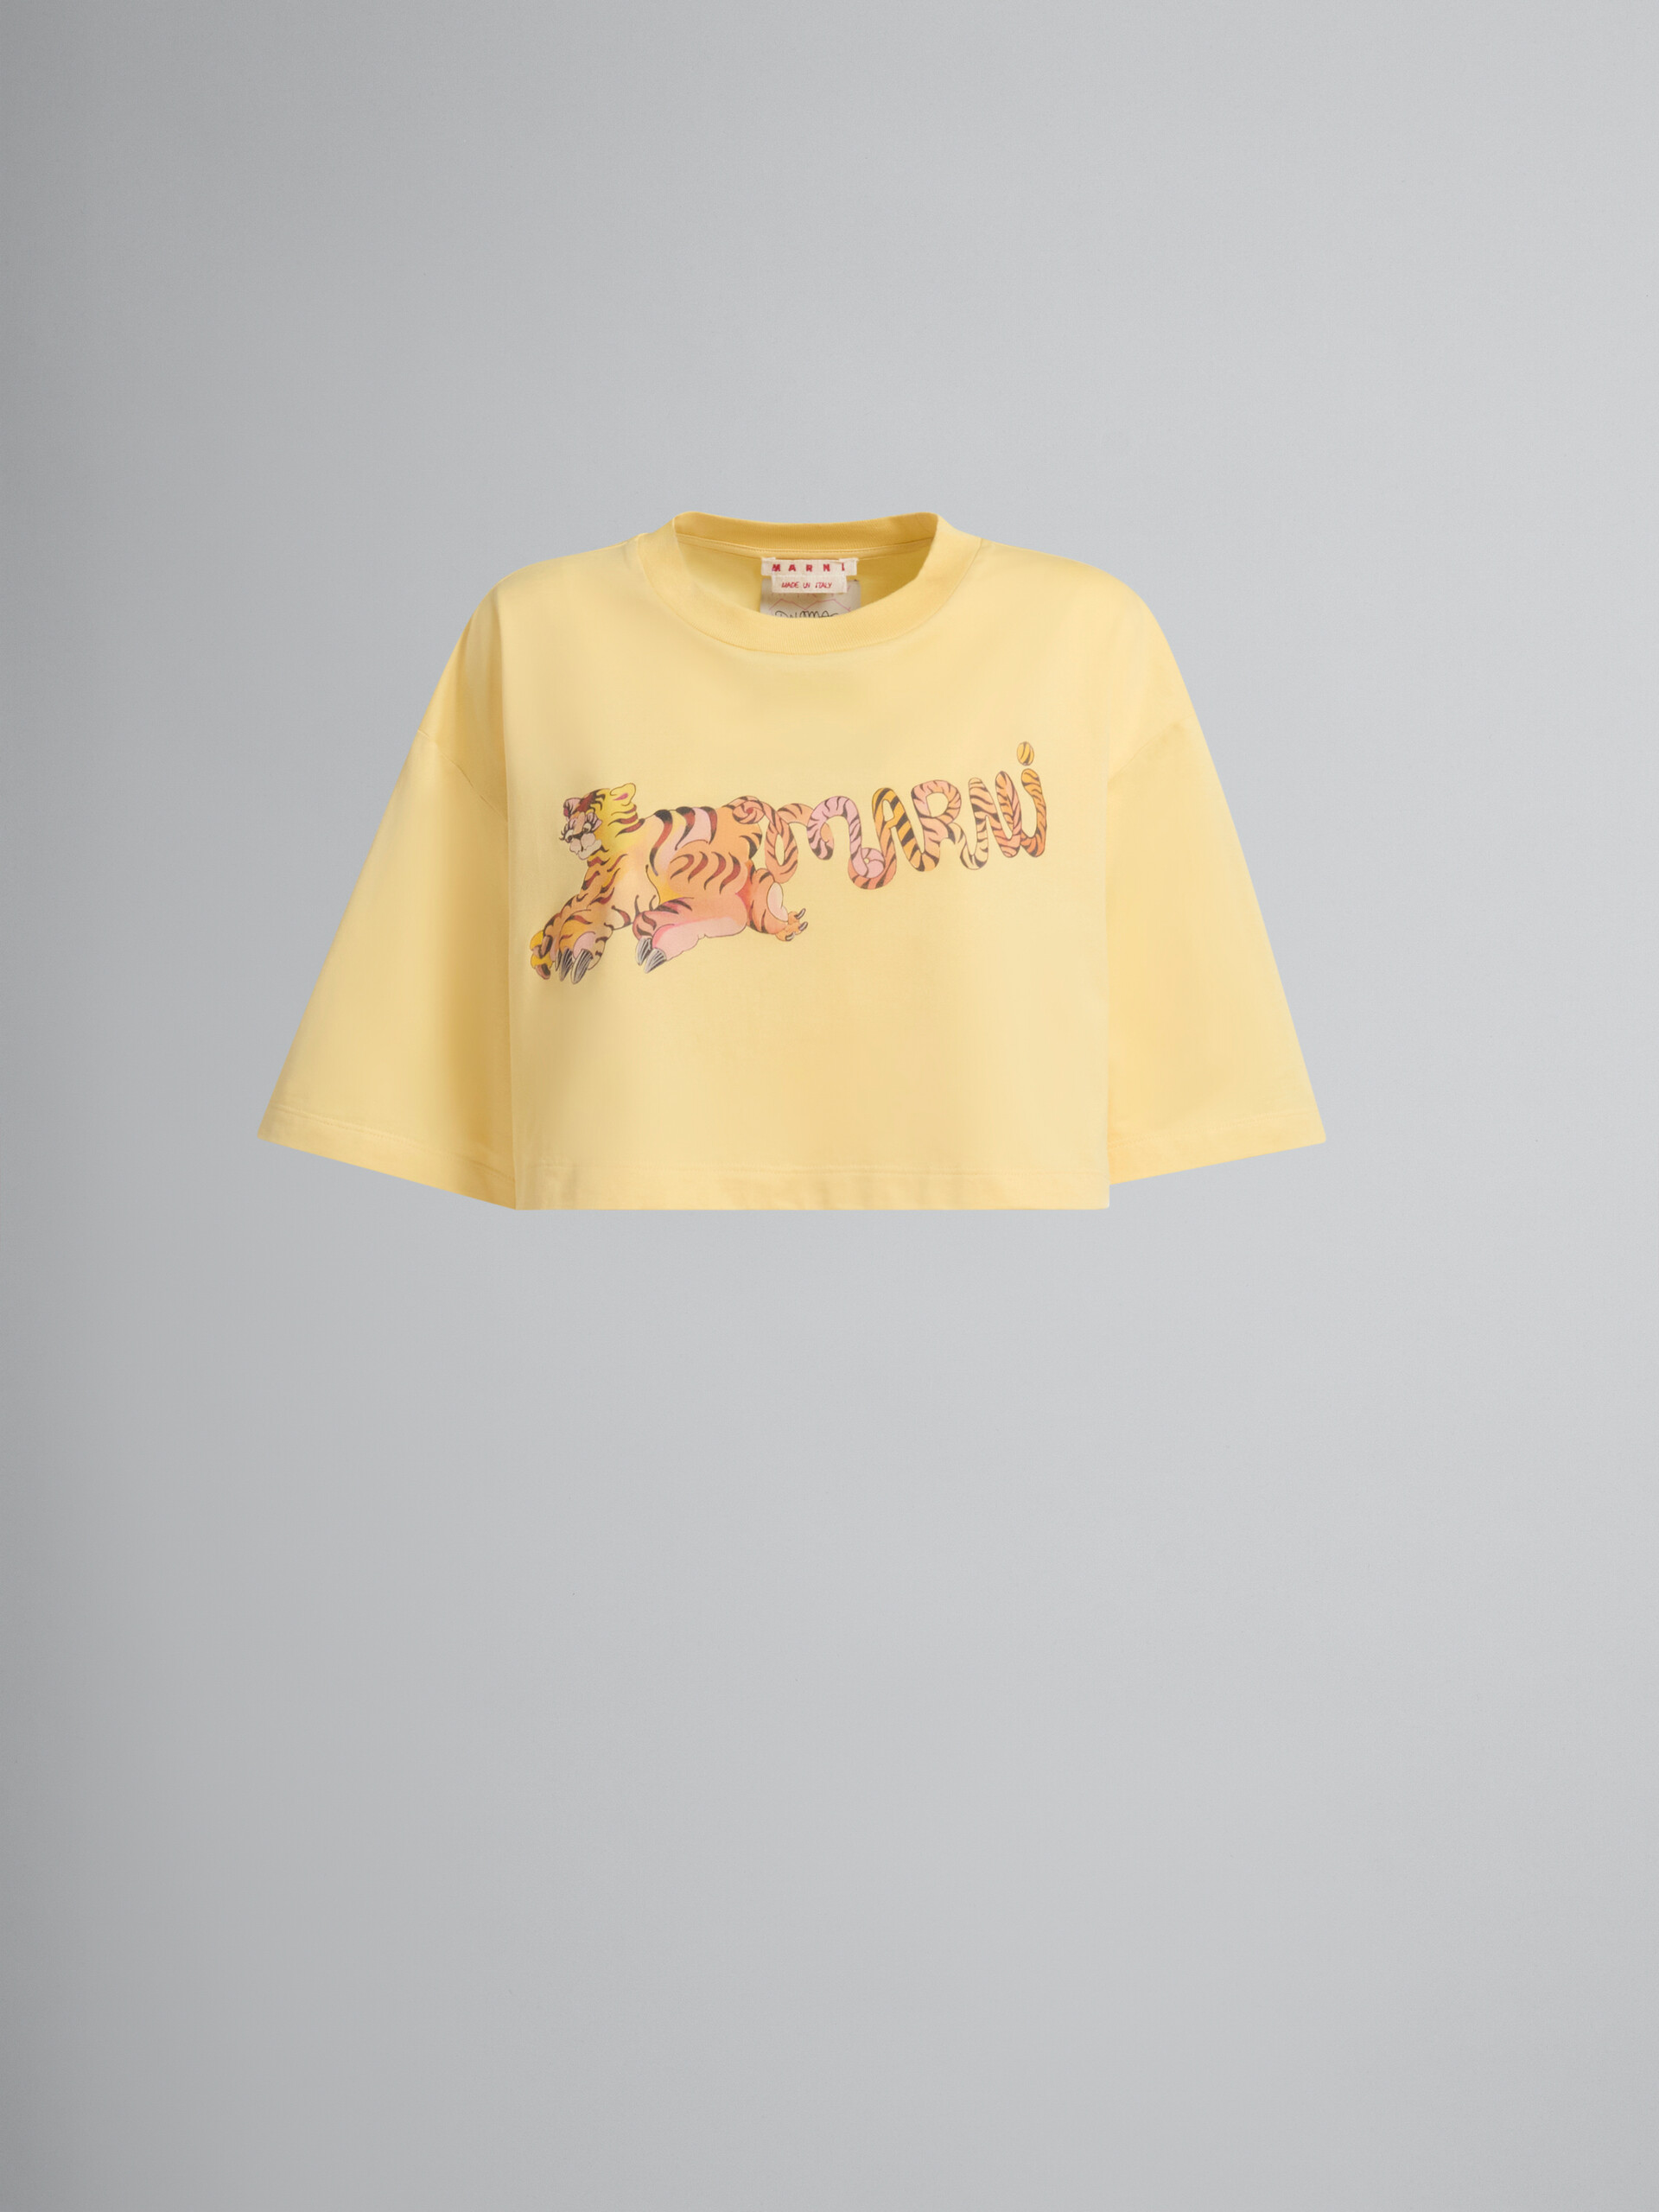 プリント入りイエローのオーガニックジャージー製クロップドTシャツ - Tシャツ - Image 1